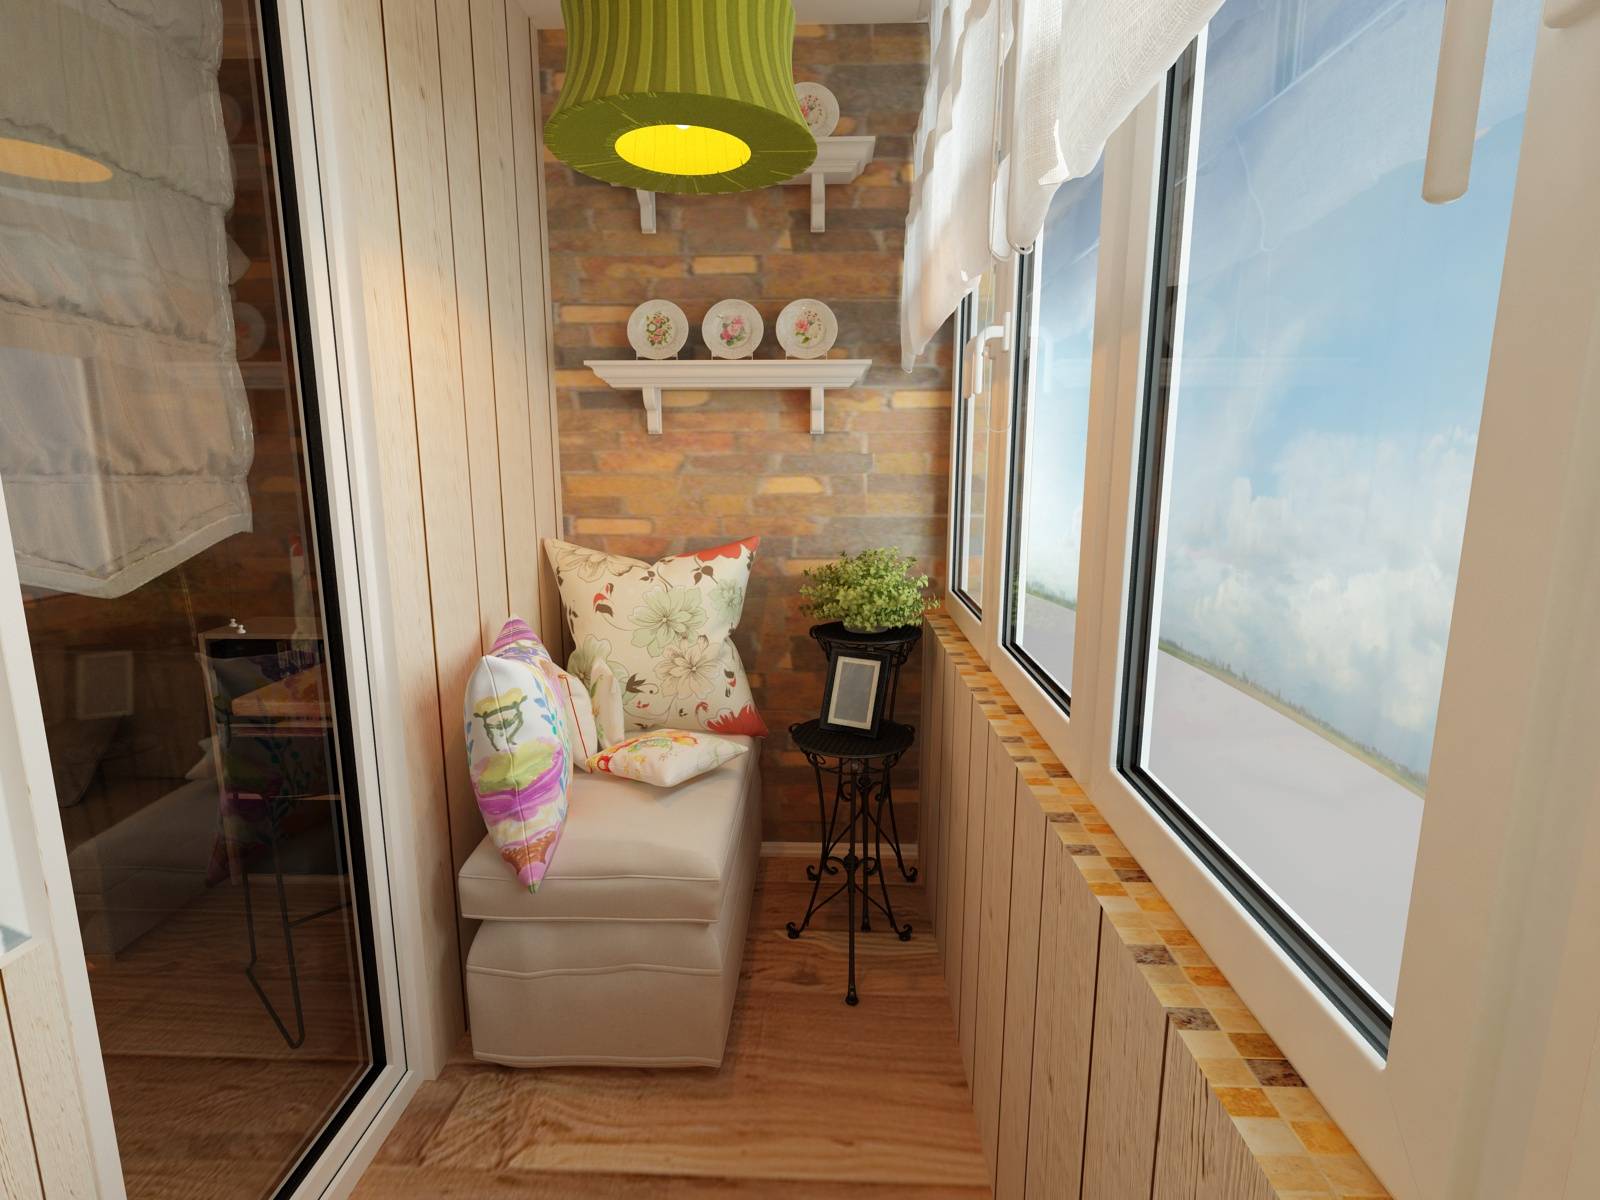 32 идеи современного оформления балкона: кабинет или зона отдыха?